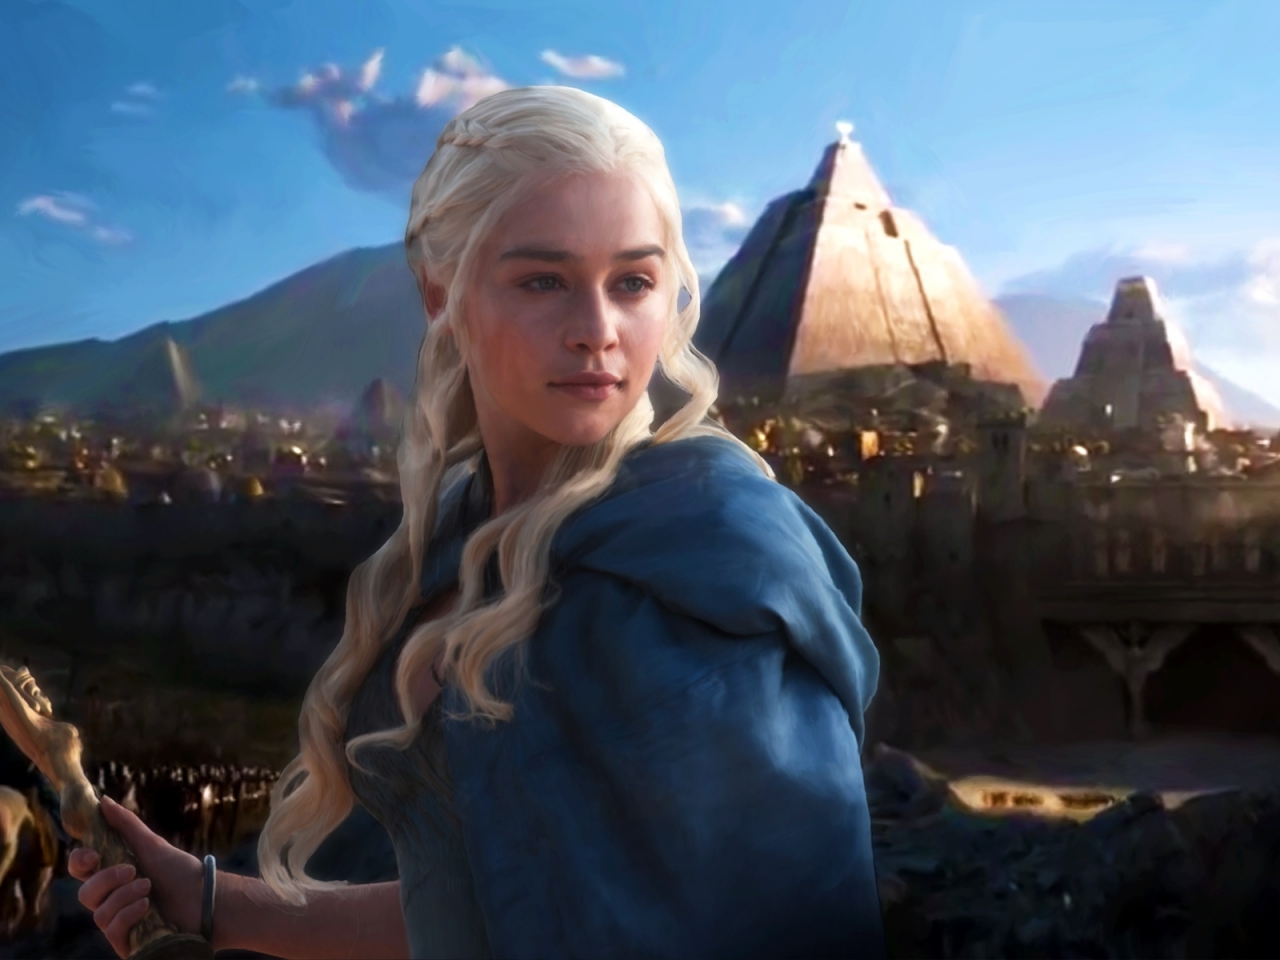 Daenerys Targaryen Fan Art for 1280 x 960 resolution